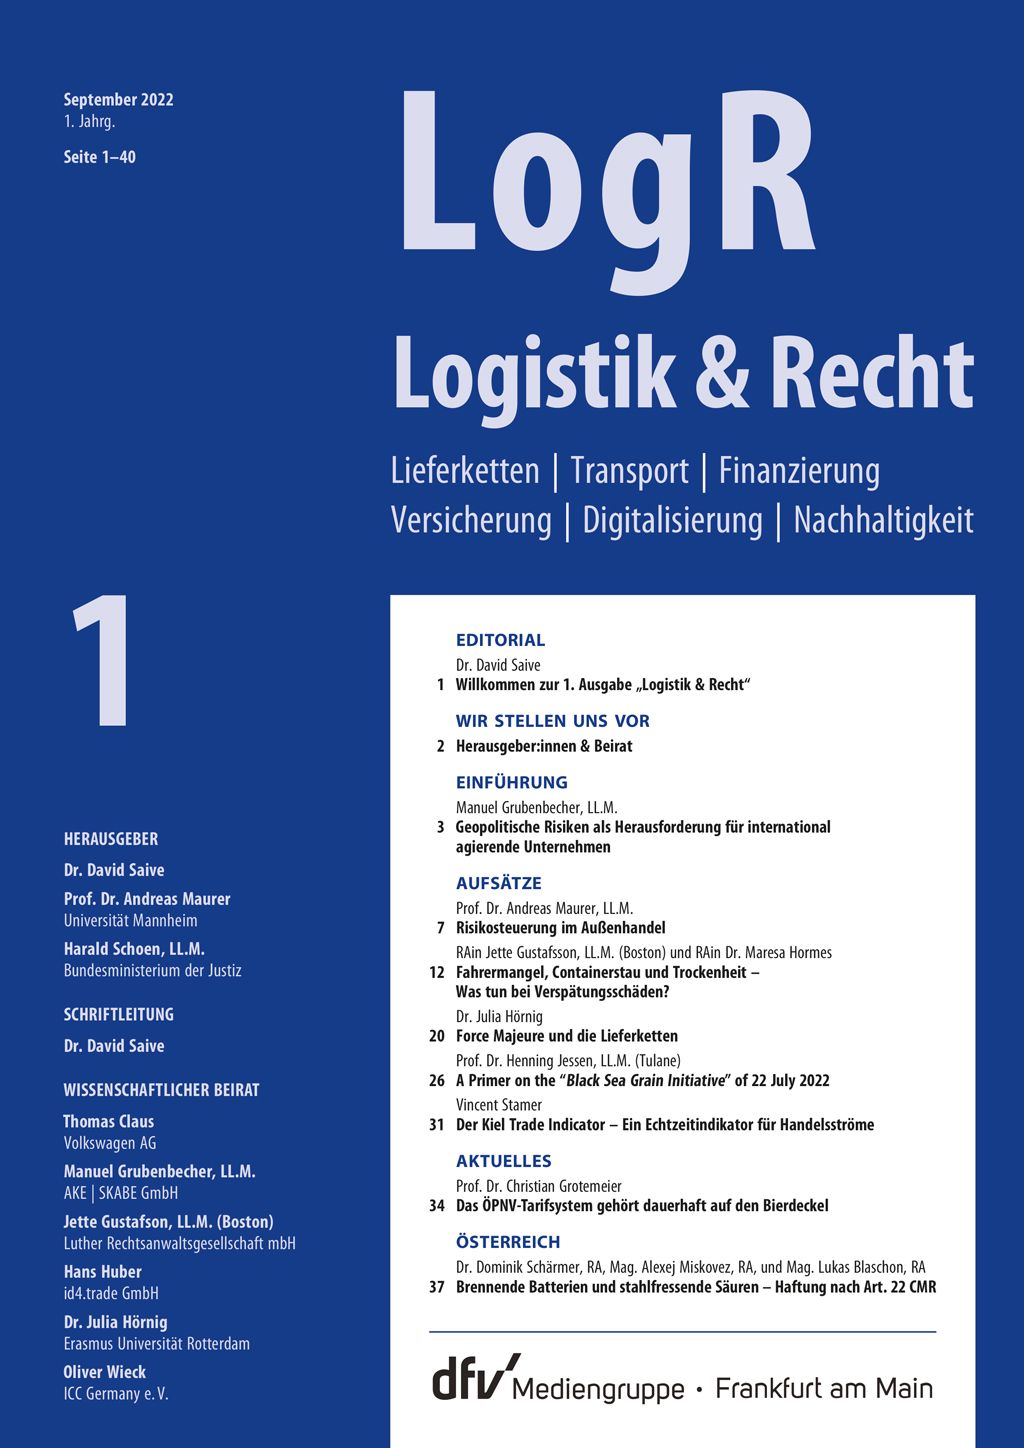 Neue-Zeitschrift-Logistik--Recht-7833.jpeg